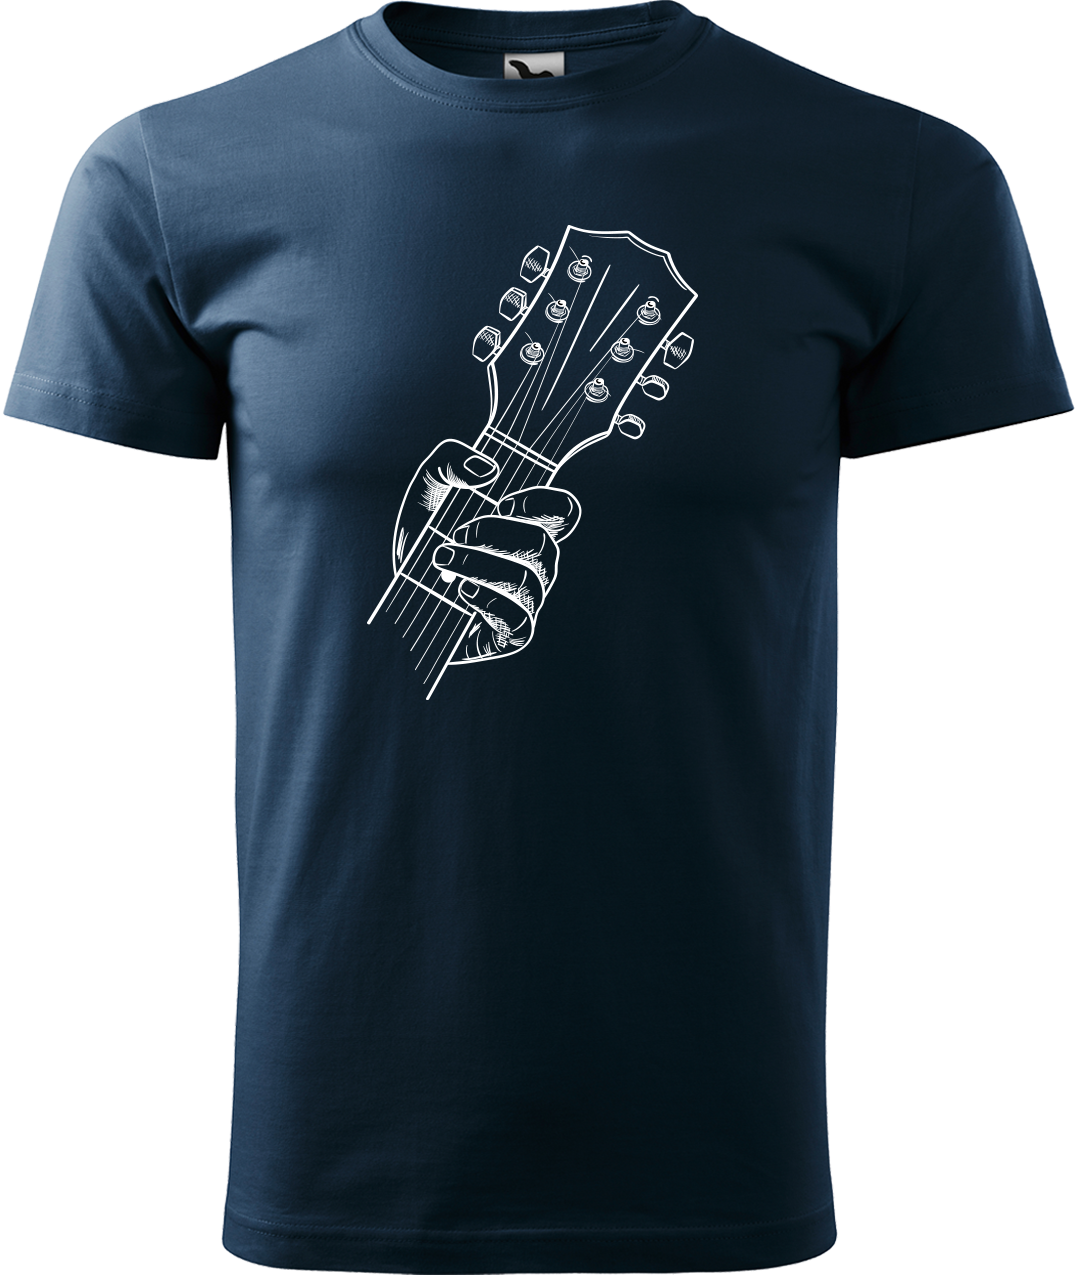 Pánské tričko s kytarou - Hlava kytary Velikost: XL, Barva: Námořní modrá (02)